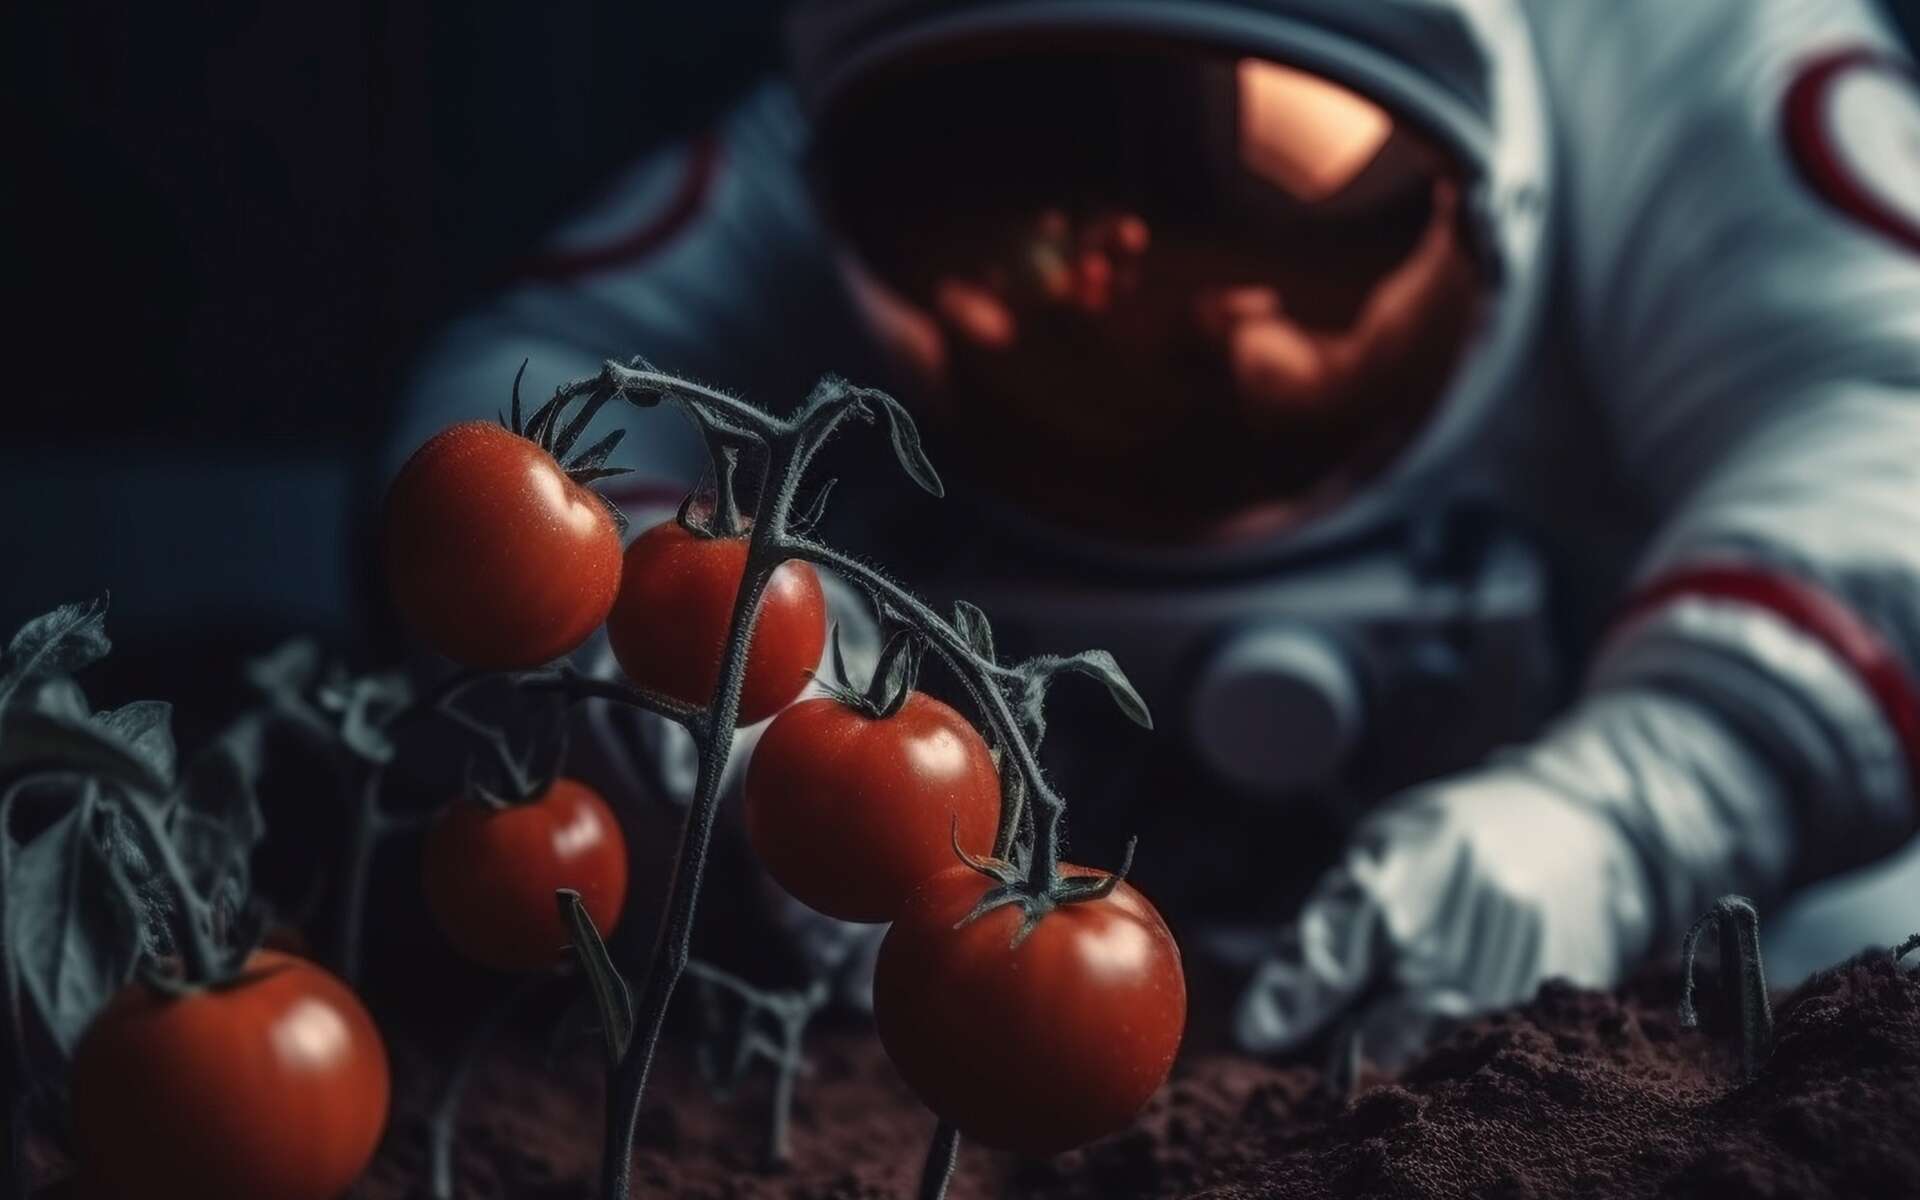 Une tomate perdue dans la Station spatiale retrouvée 8 mois après !